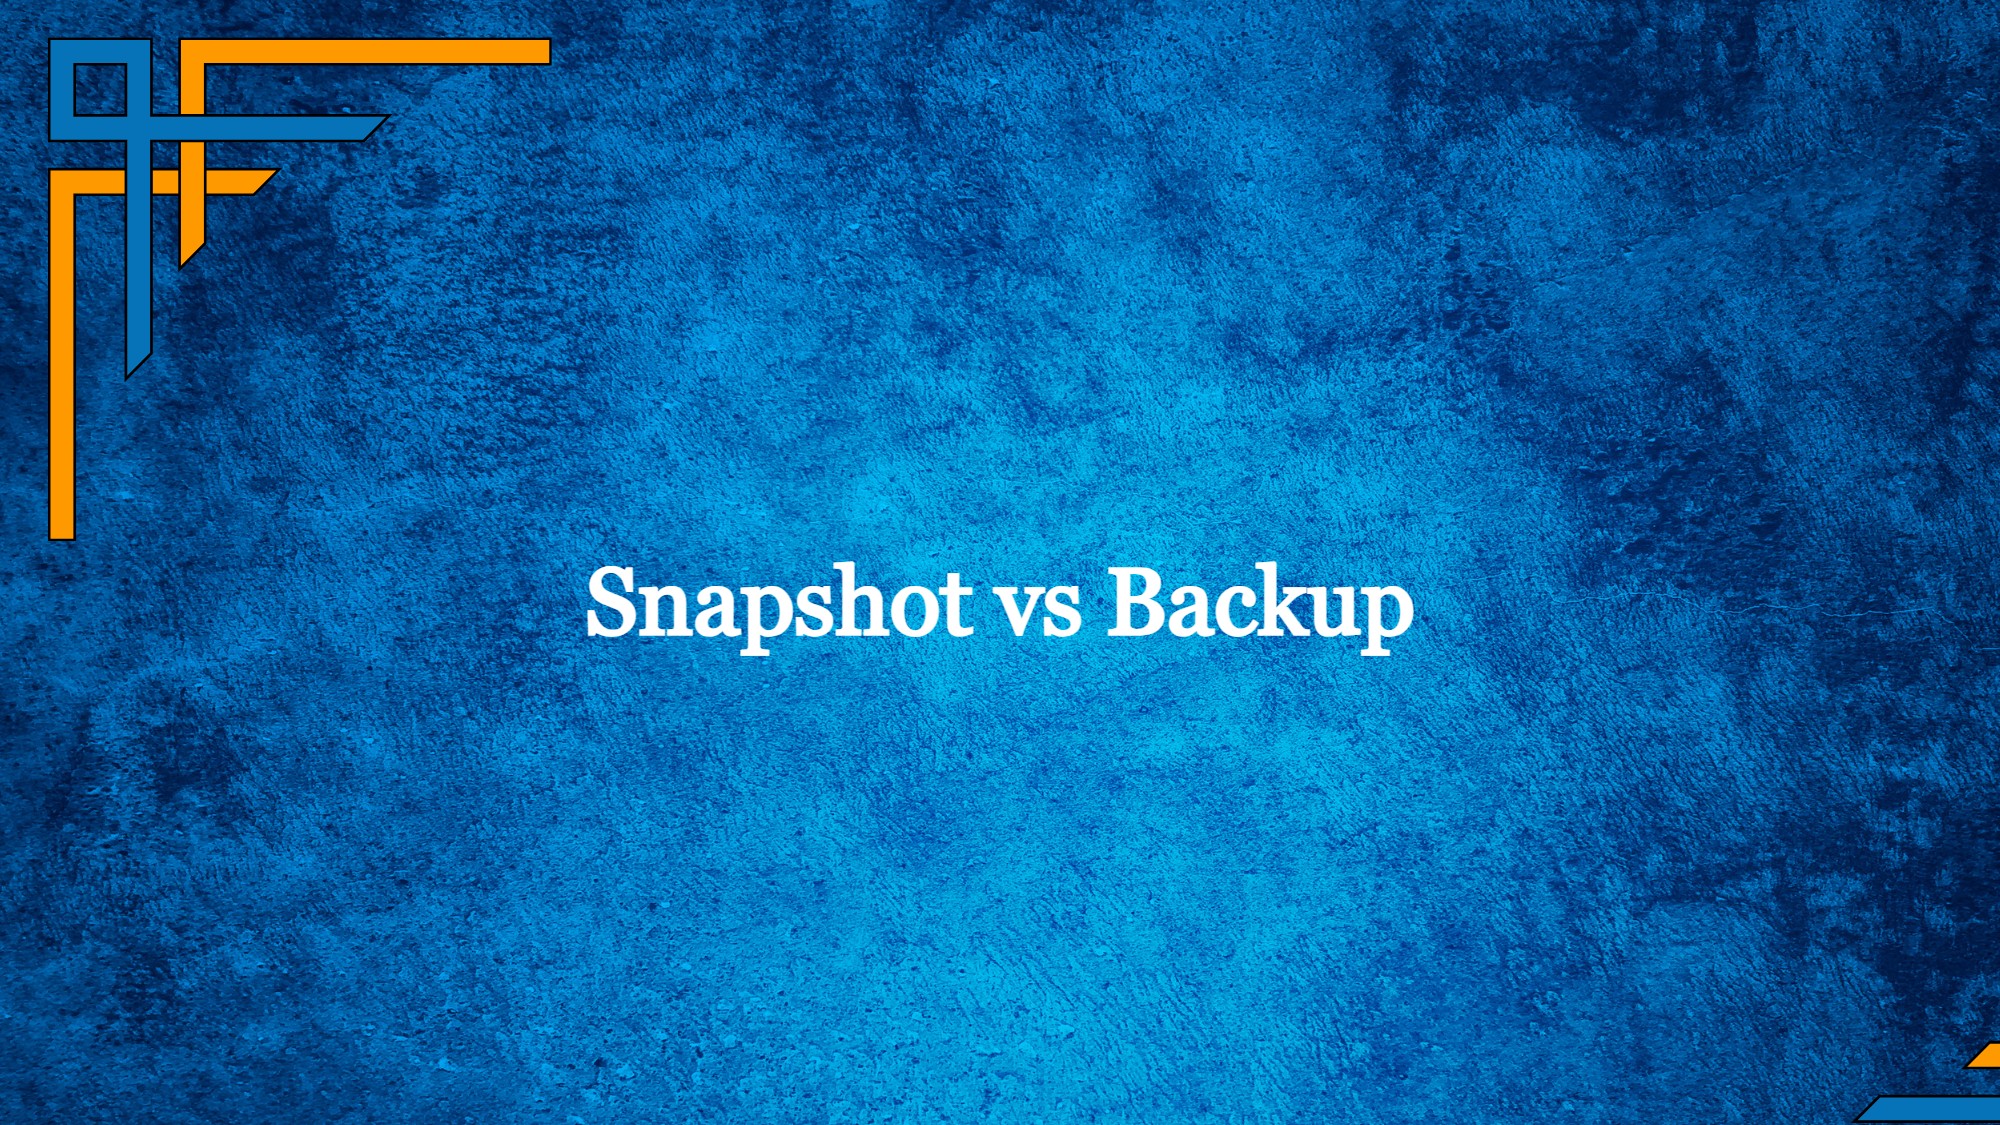 Snapshot vs Backup